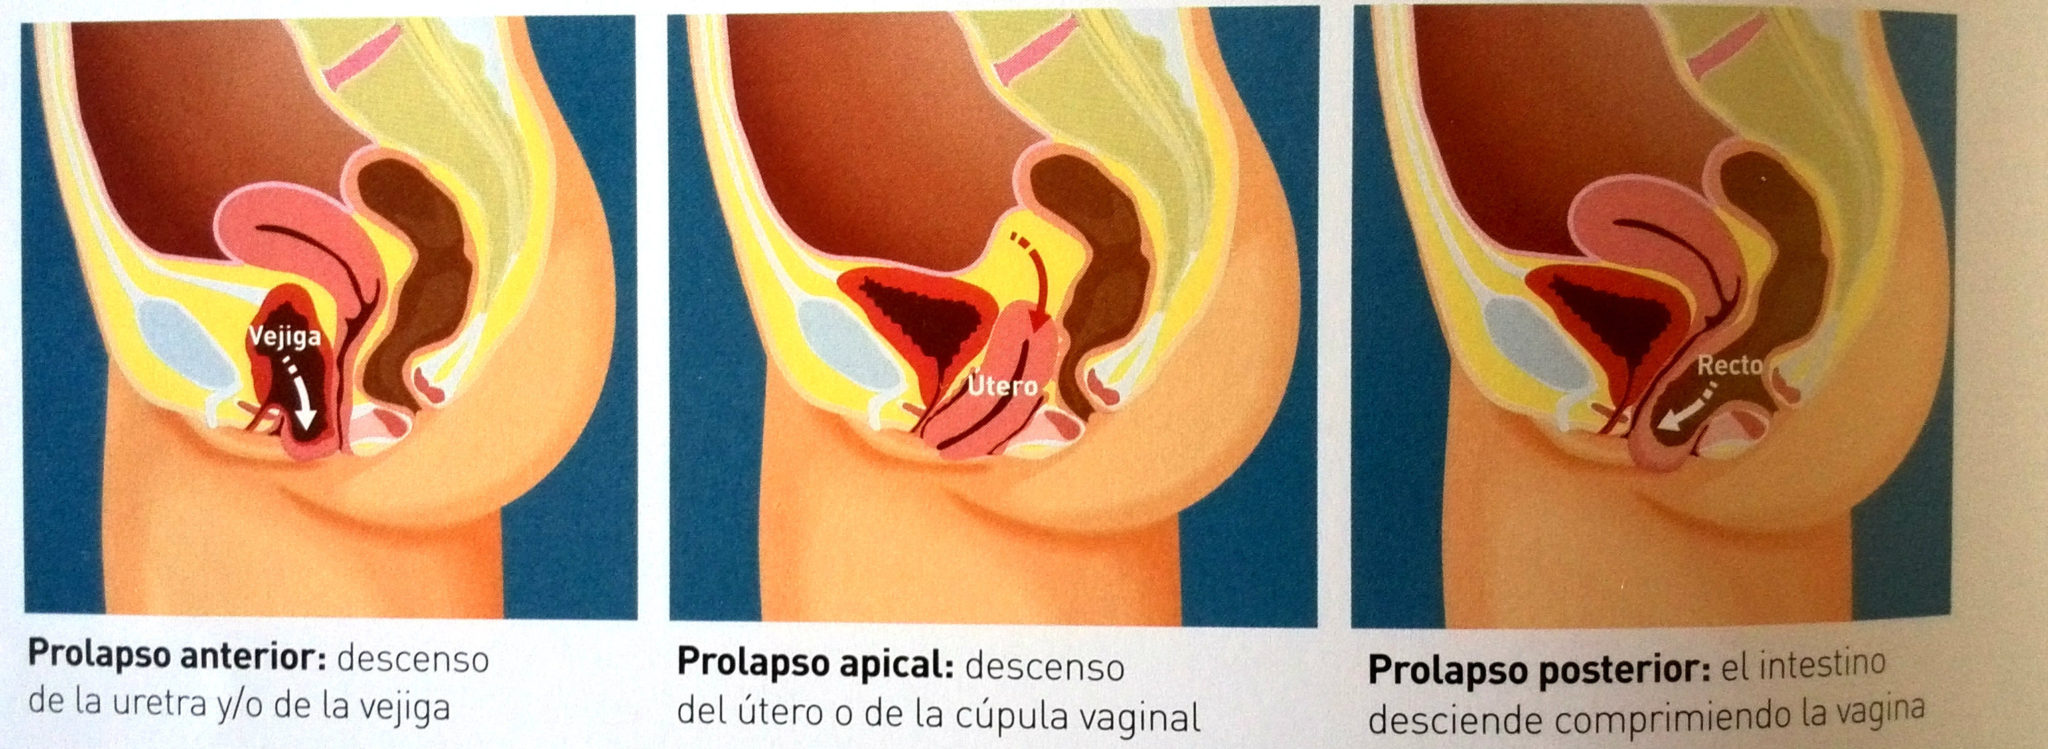 Uroginecologo Especialista En Prolapso Genital Tratamiento